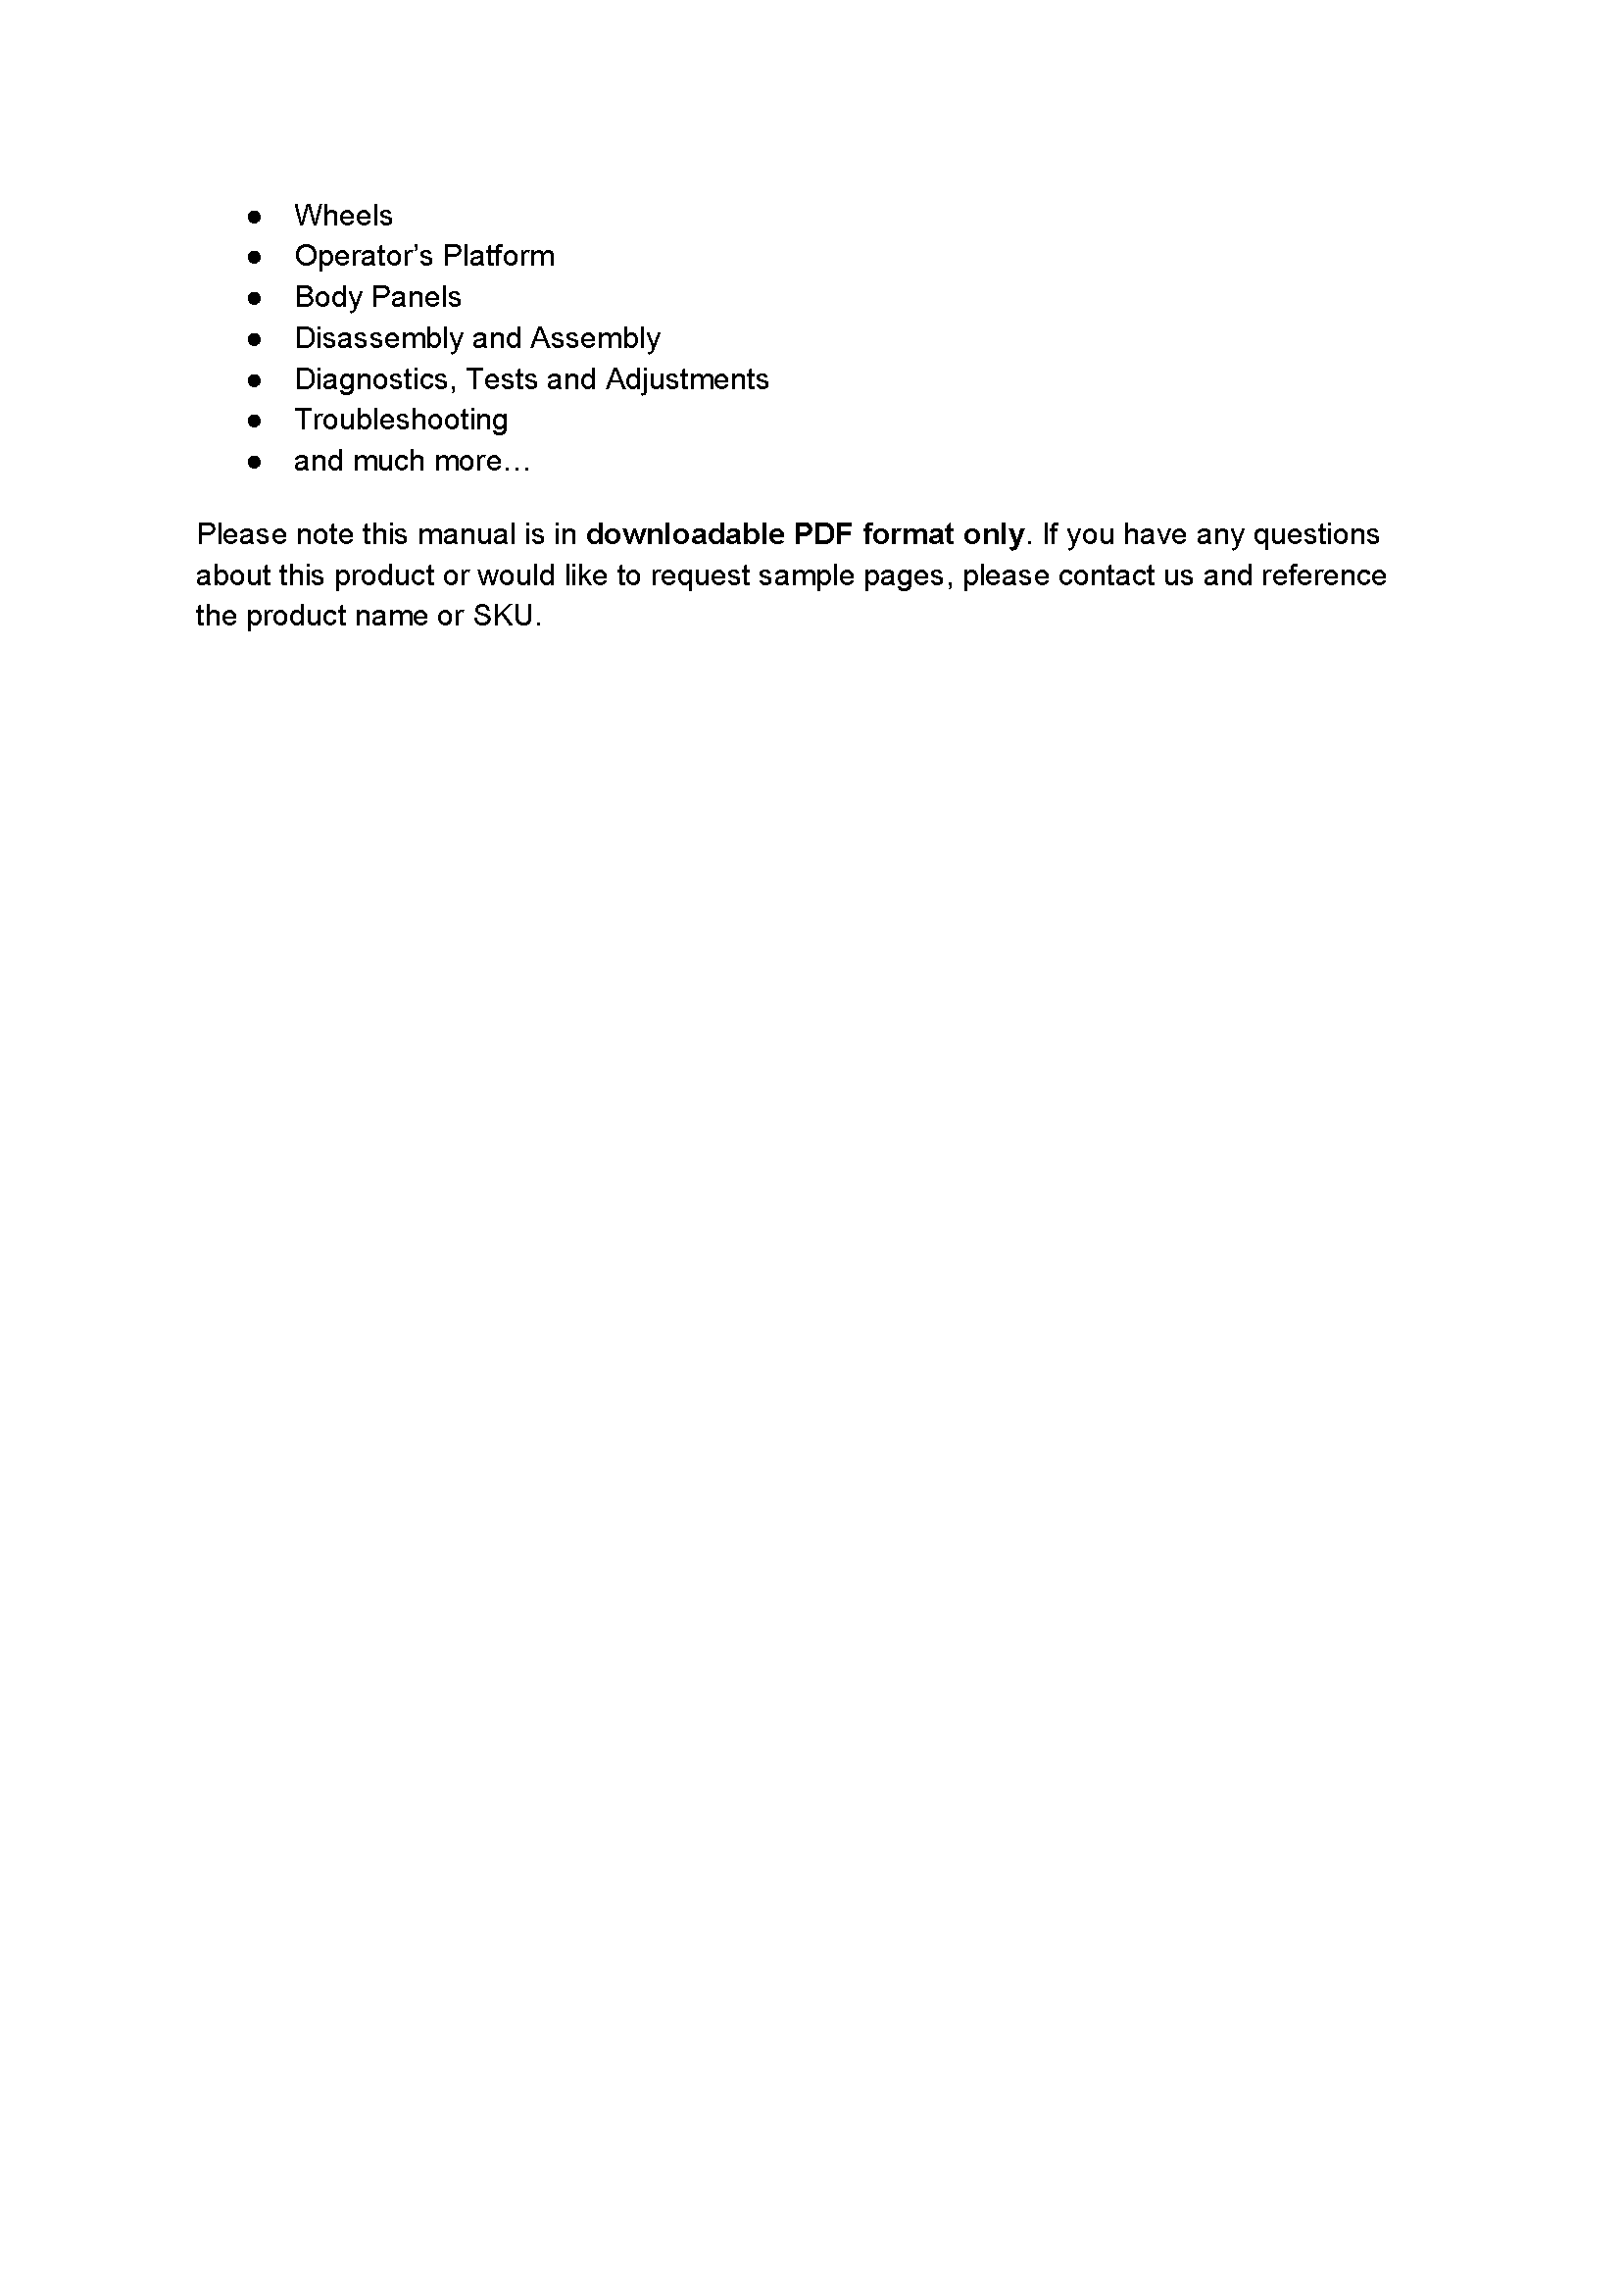 John Deere 2025R manual pdf